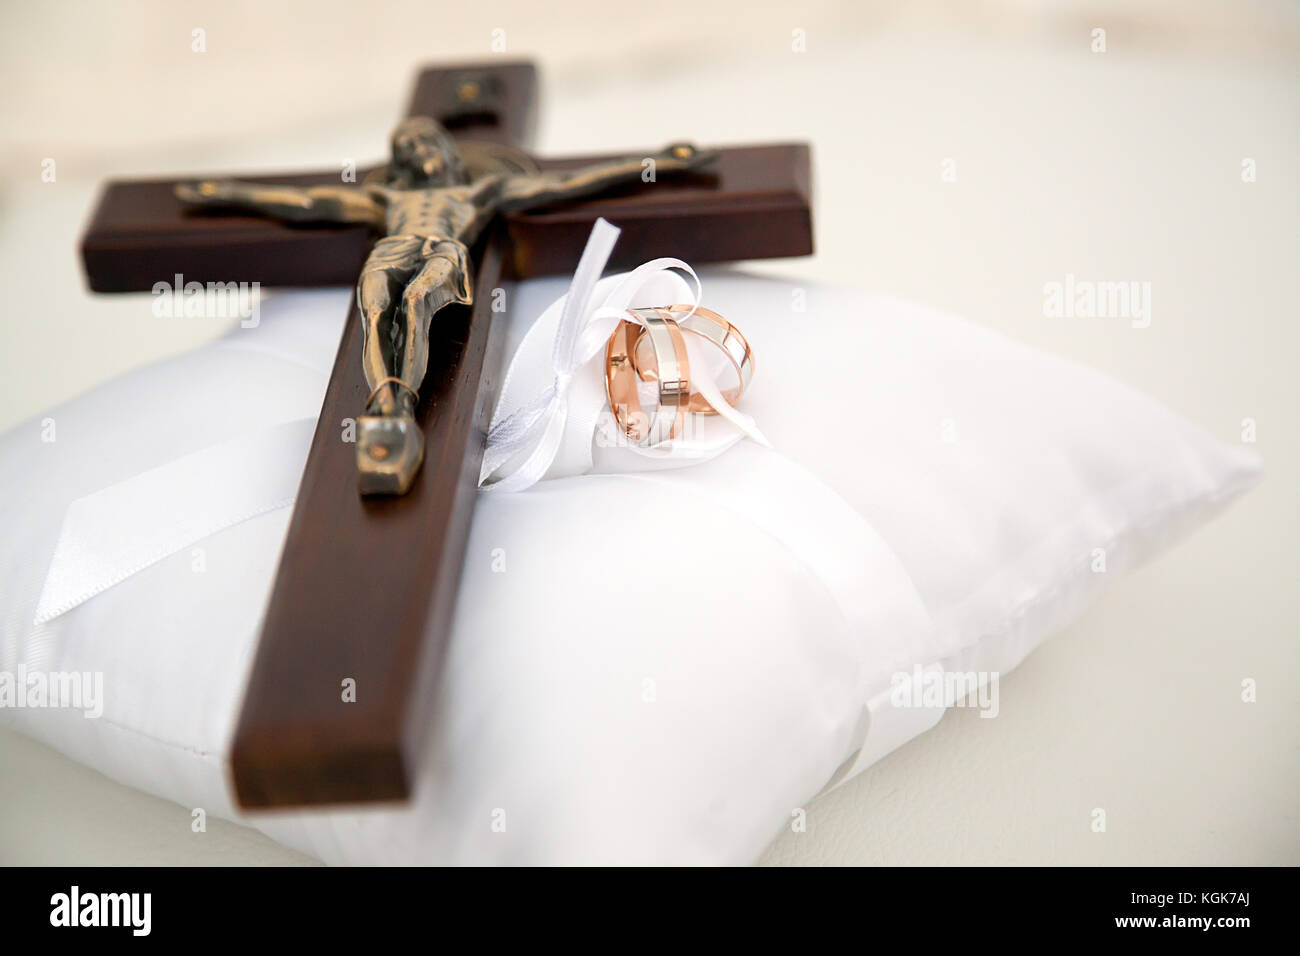 Hochzeit Ringe und kleine Holz- christliche Kreuz mit Christus auf weißen dekorative Kissen gelegt.jpg Stockfoto